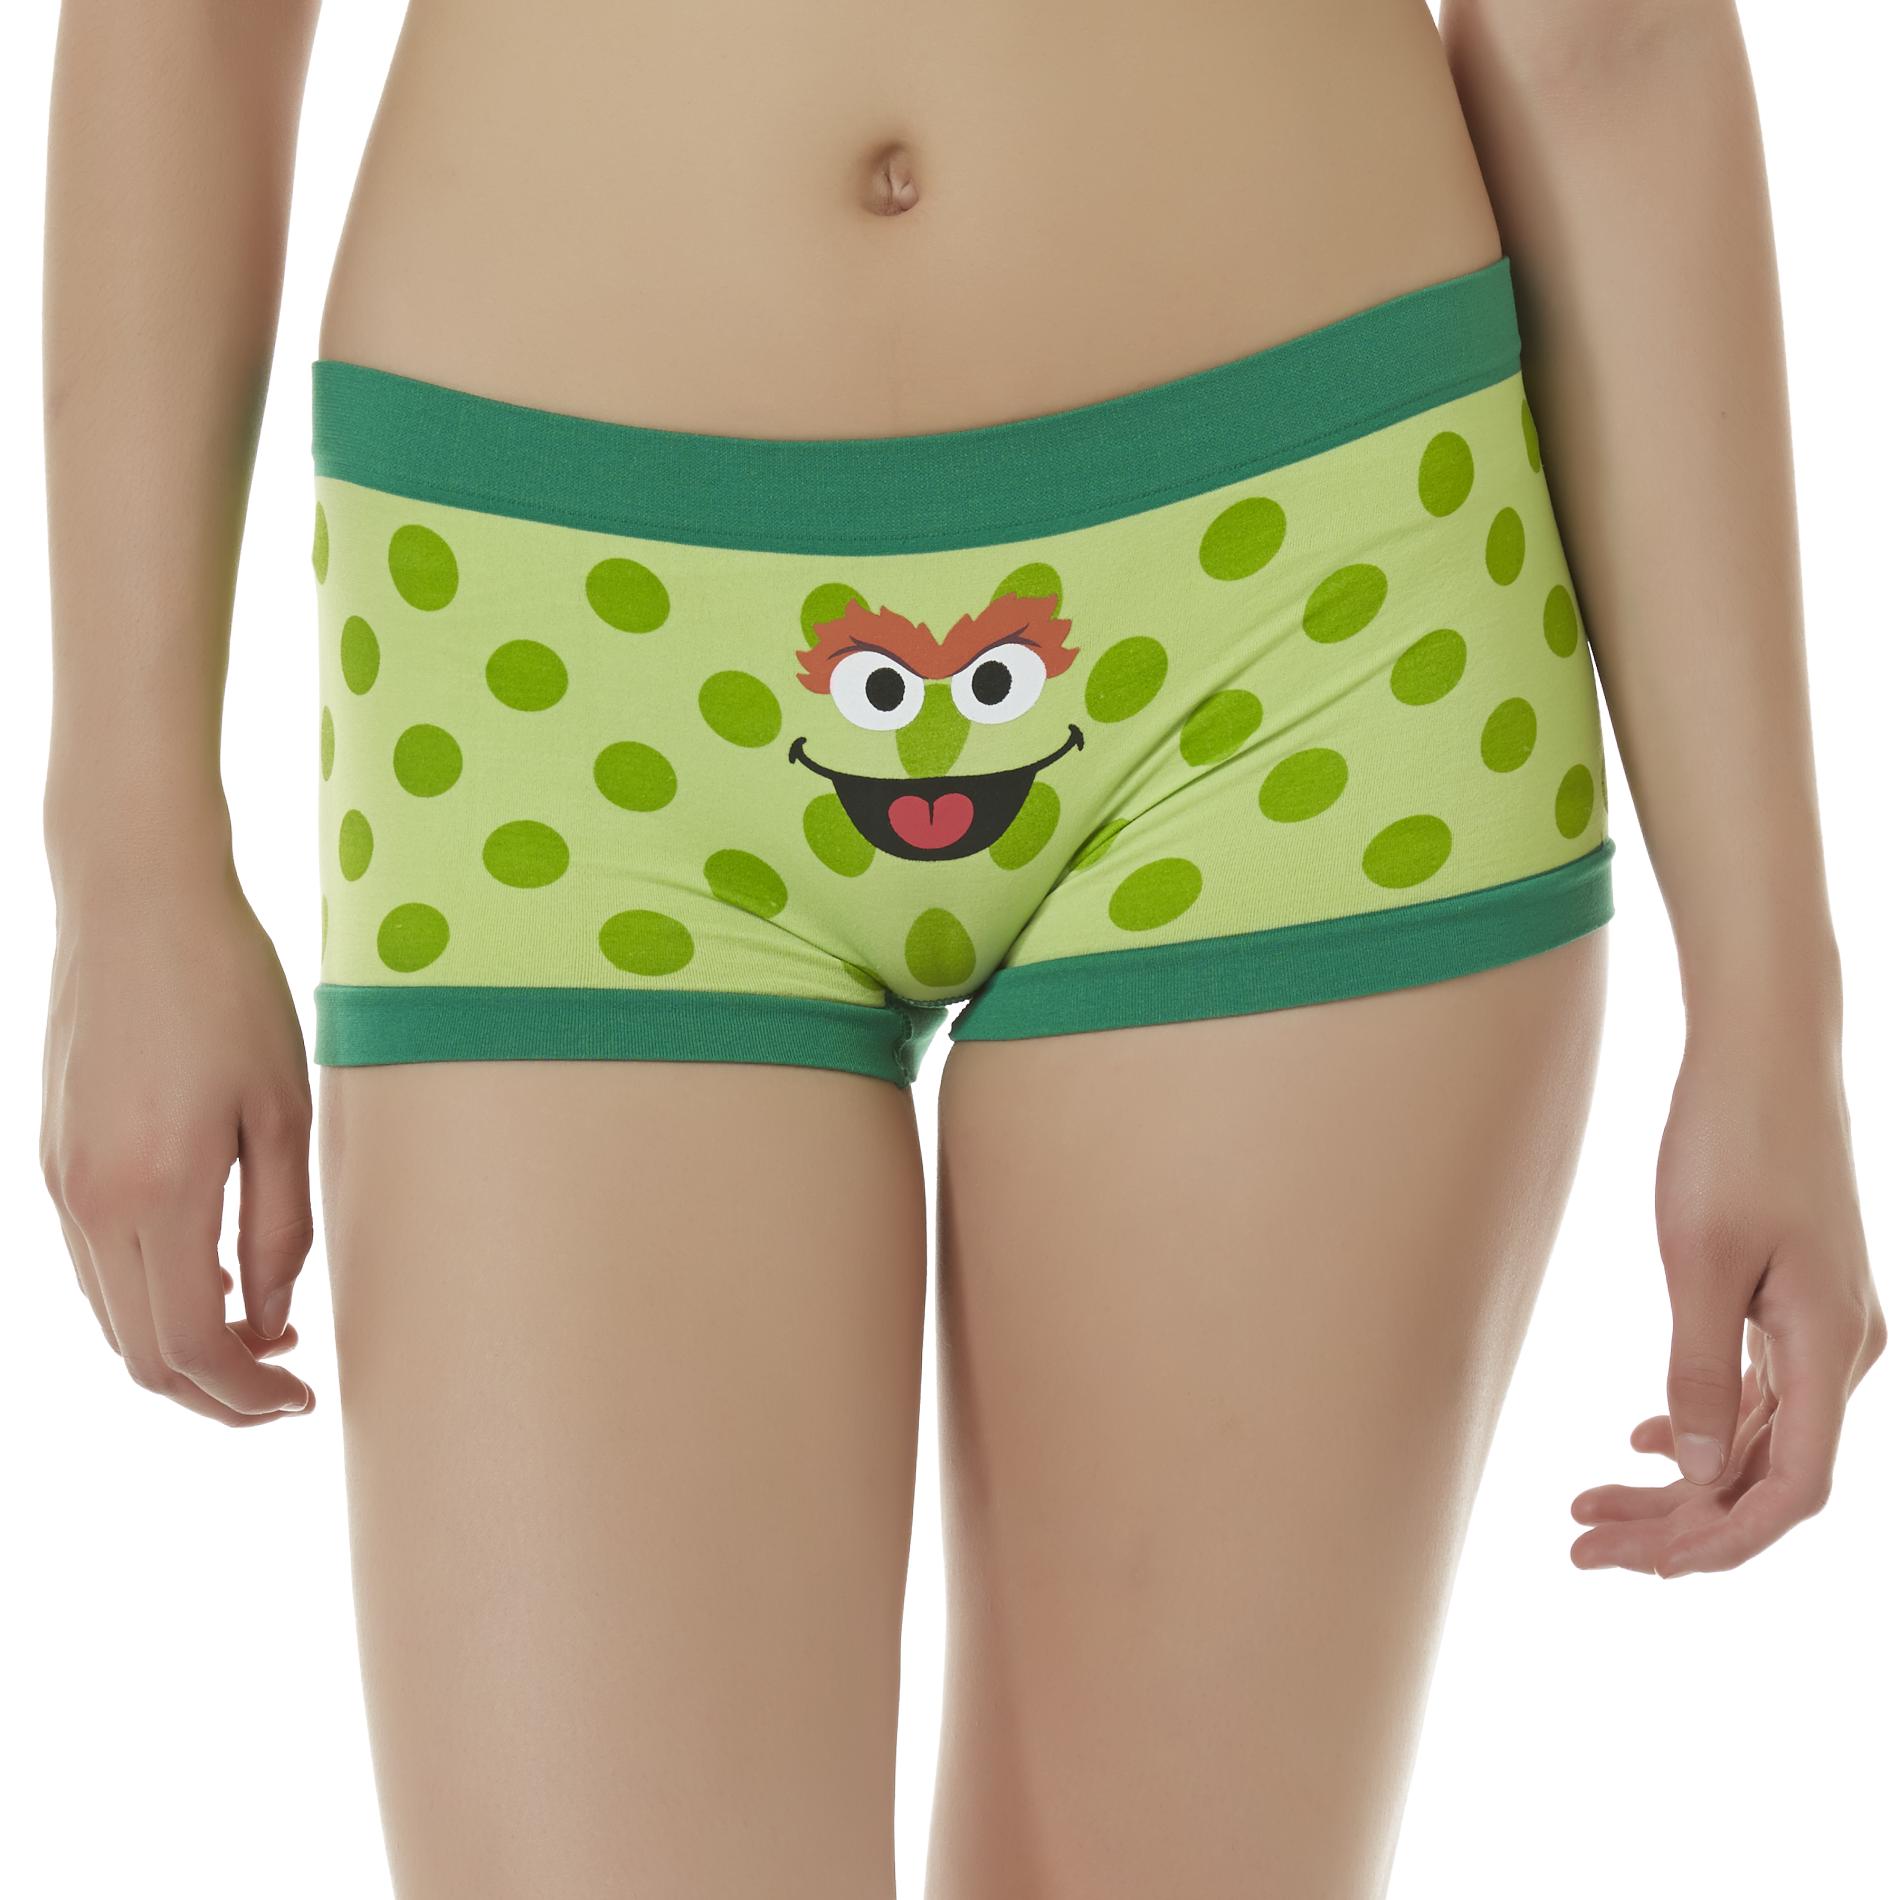 Sesame Street Panties 72